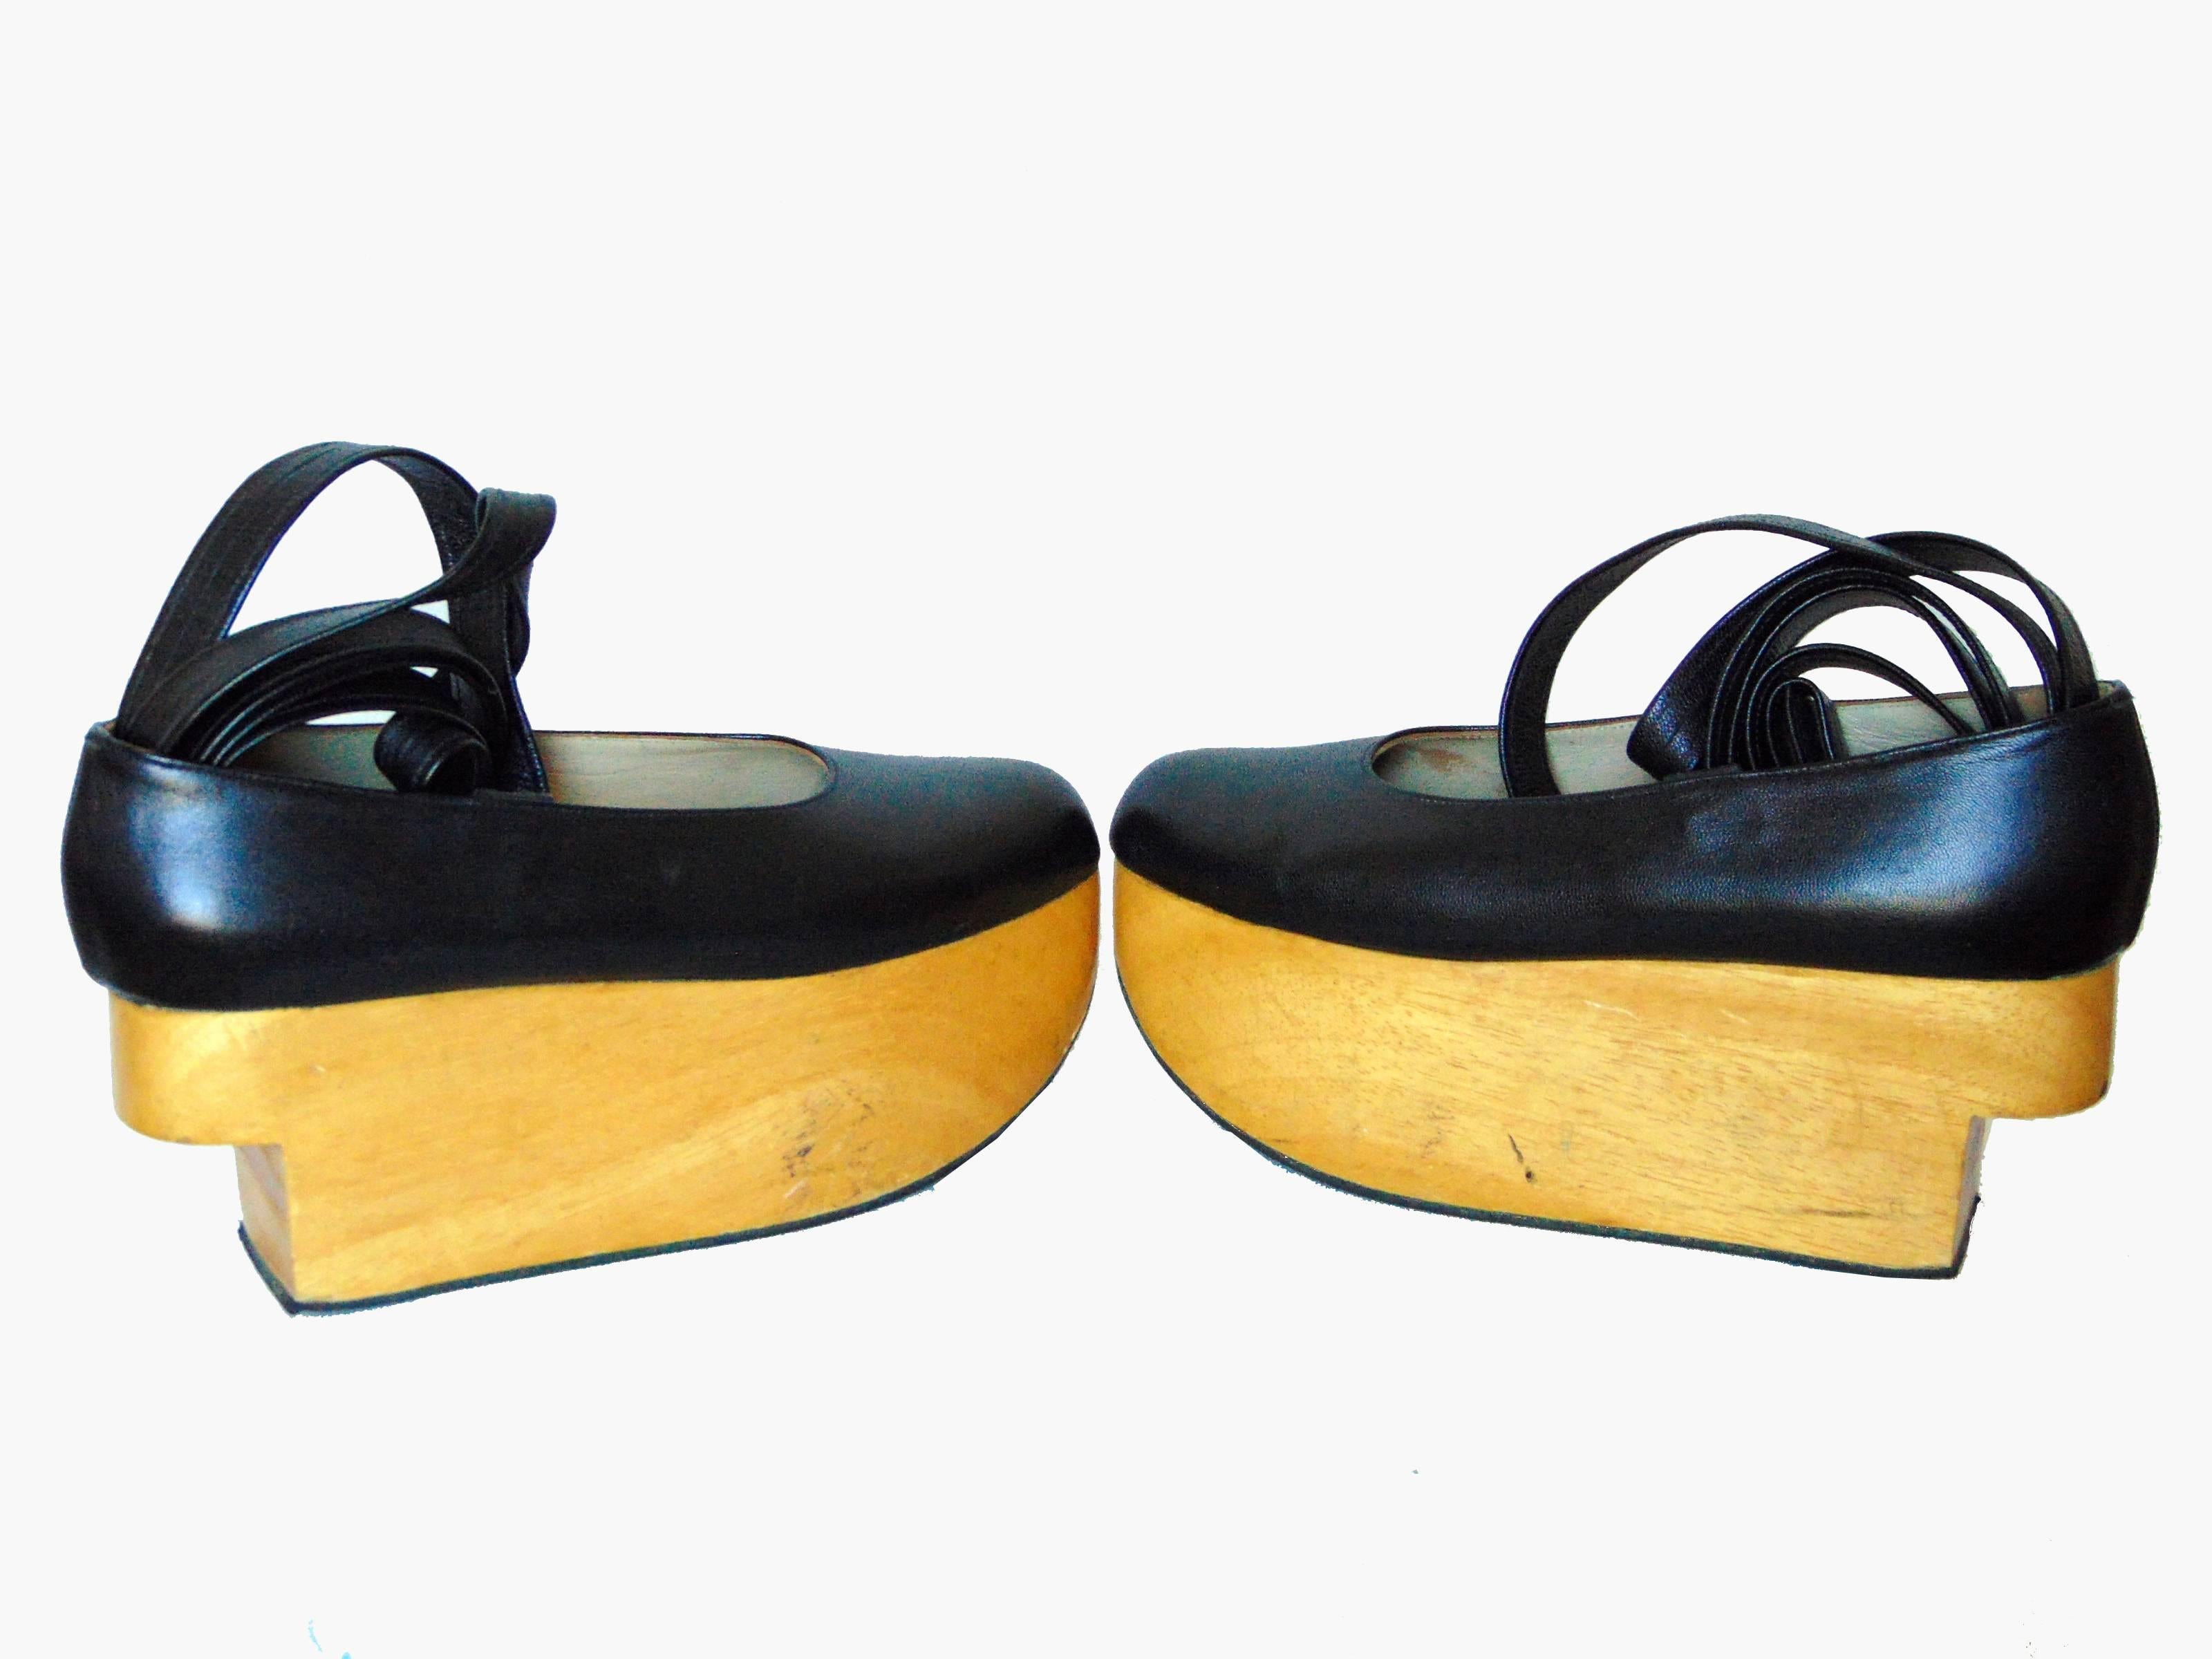 Beige Vivienne Westwood Rocking Horse Shoes Black Leather Ballerina Platforms US6 UK5